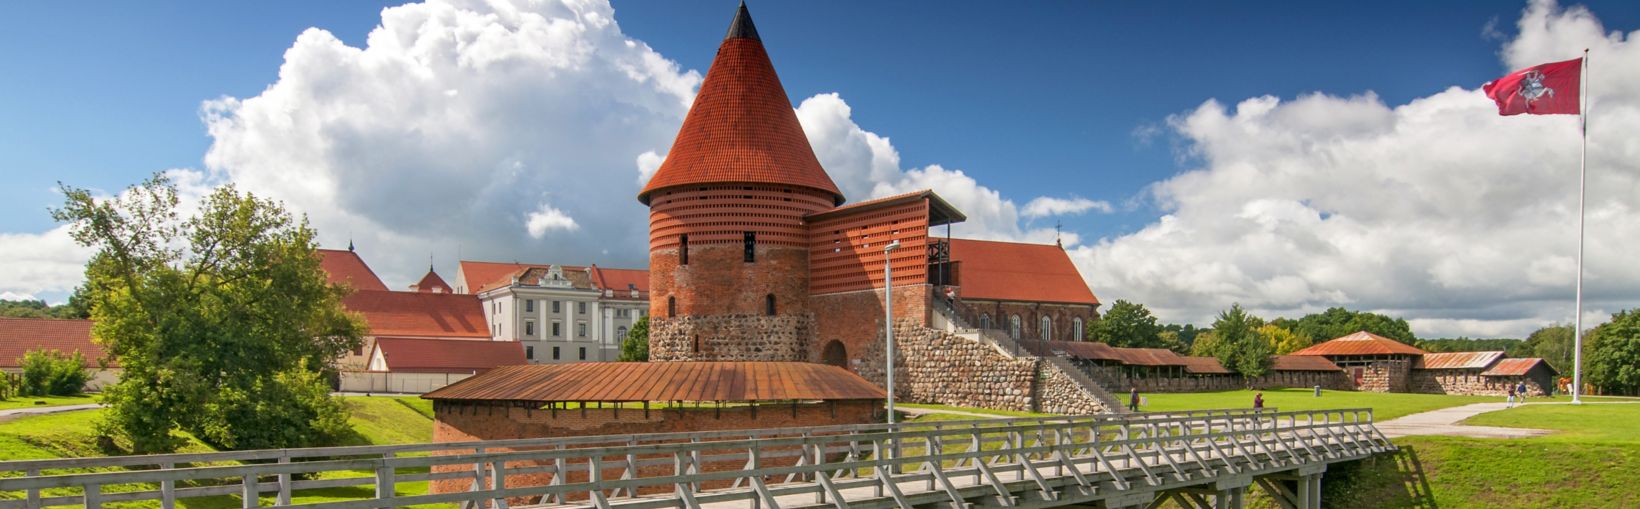 Gotikinio stiliaus Kauno pilis, pastatyta XIV a. viduryje. Kaunas, Lietuva.